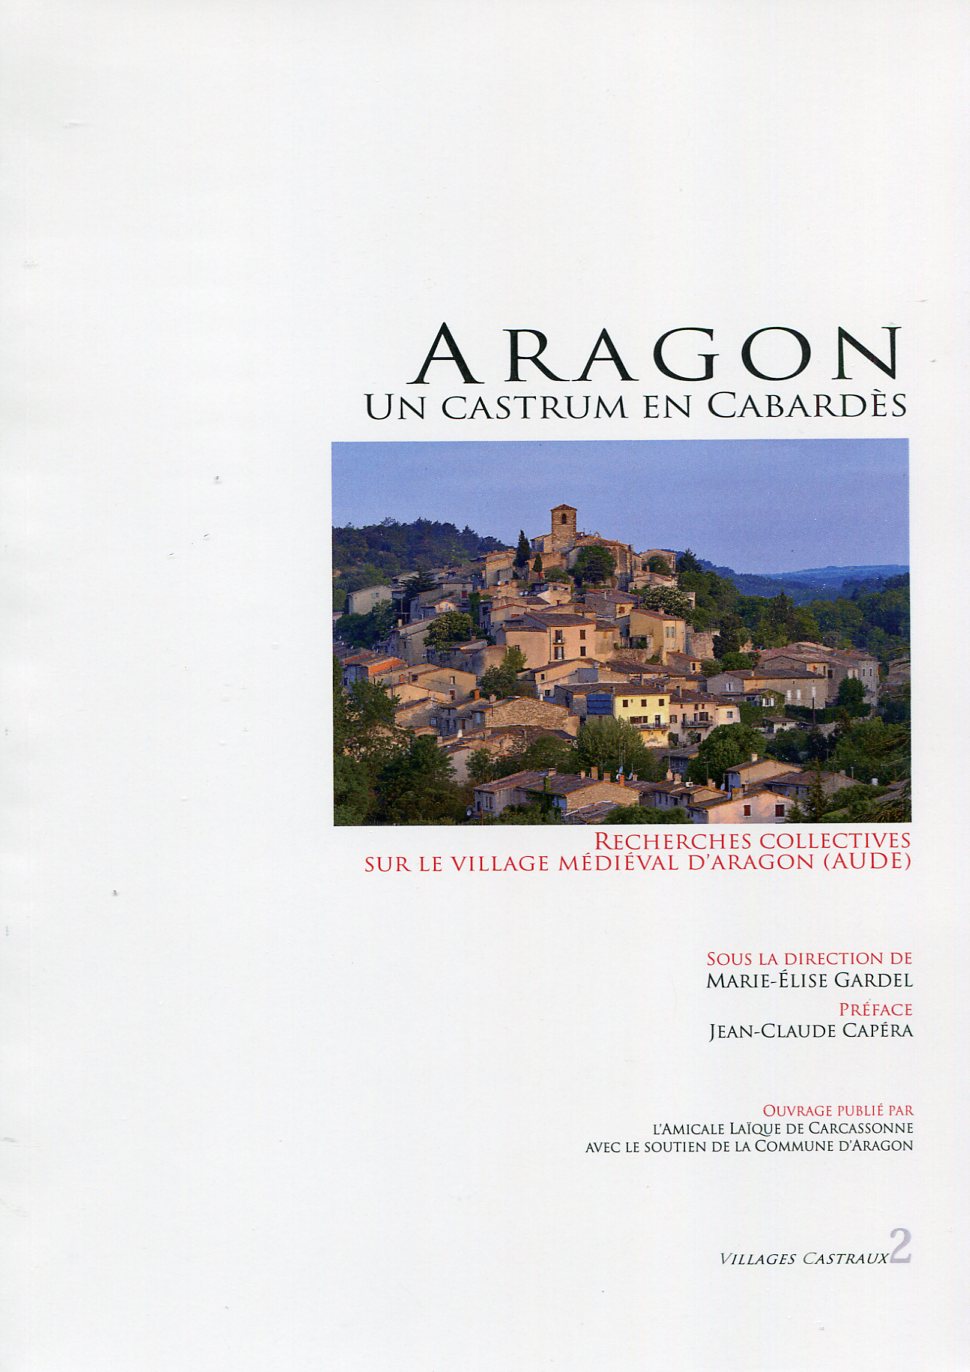 Aragon, un castrum en Cabardès. Recherches collectives sur le village médiéval d'Aragon (Aude), 2020, 136 p.